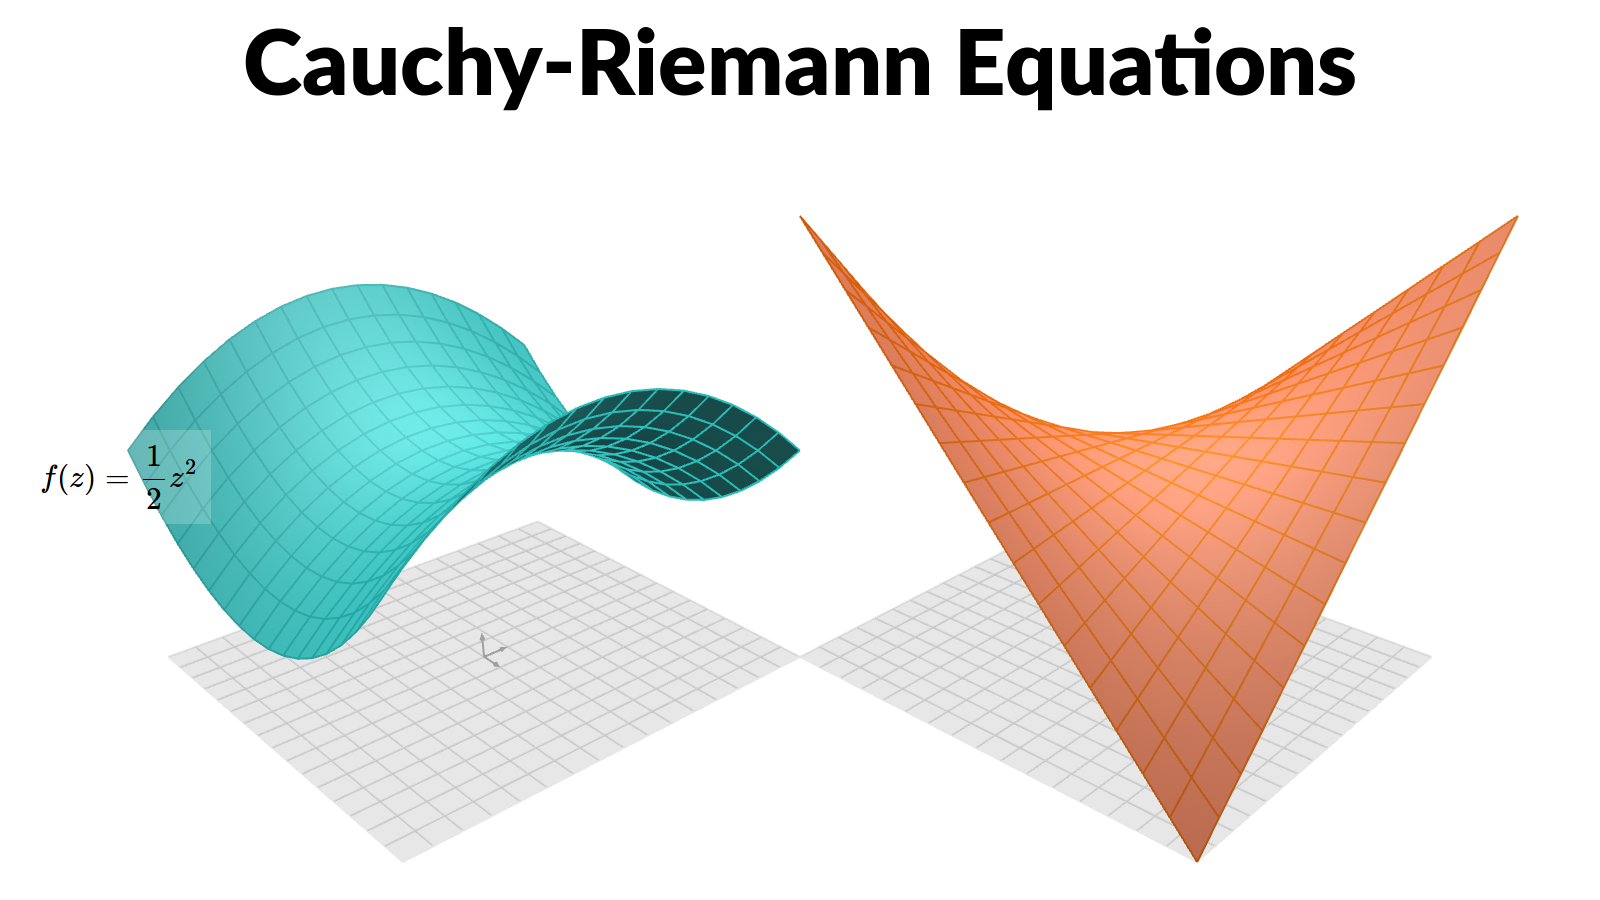 Cauchy-Riemann Equations